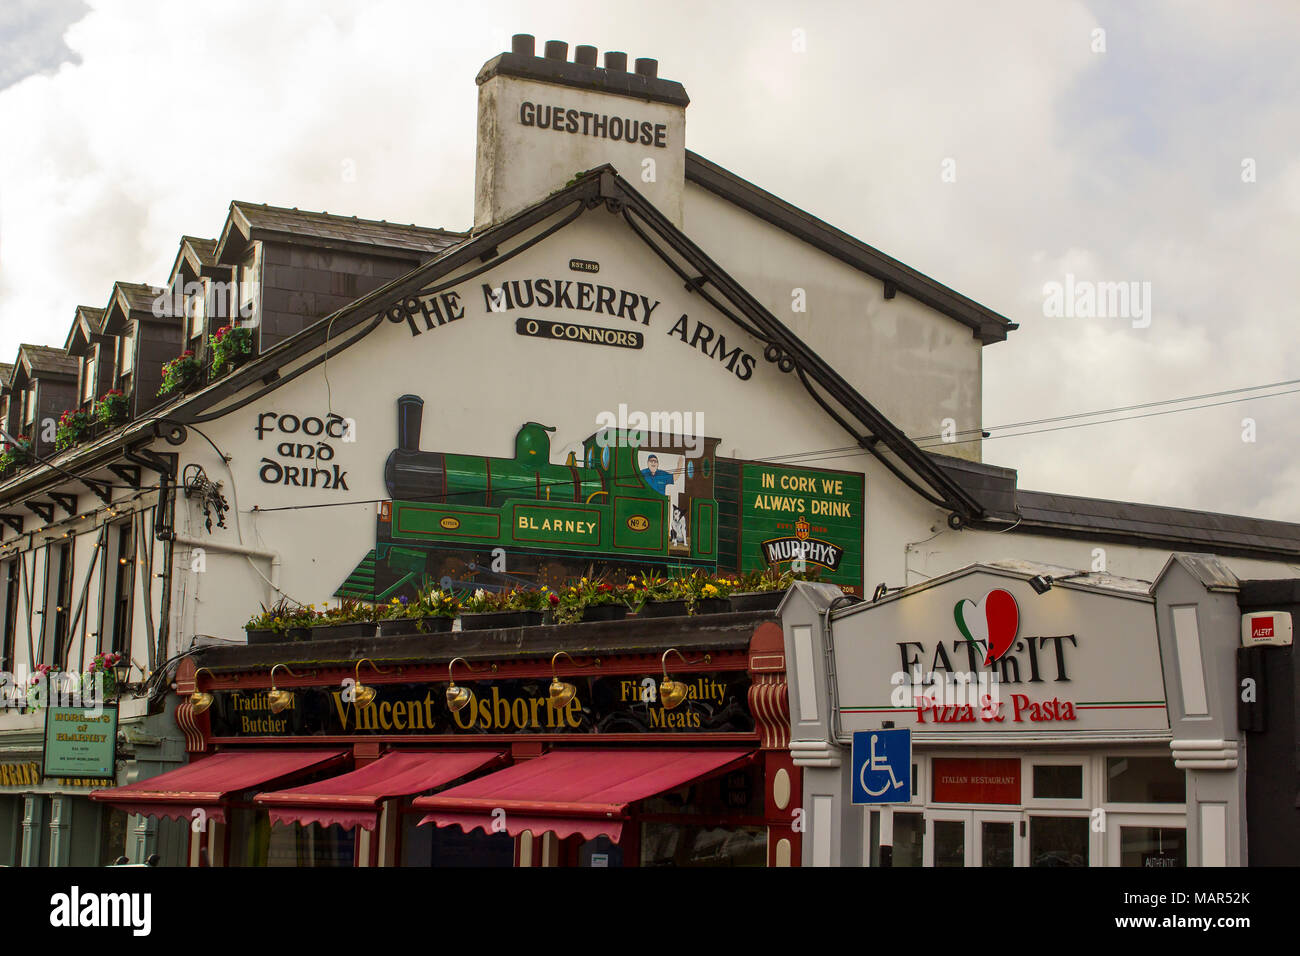 Blarney Cork Irland die Beschilderung auf der Giebelwand des Muskerry Arme ein traditionelles irisches Pub an der Hauptstraße der Stadt Stockfoto